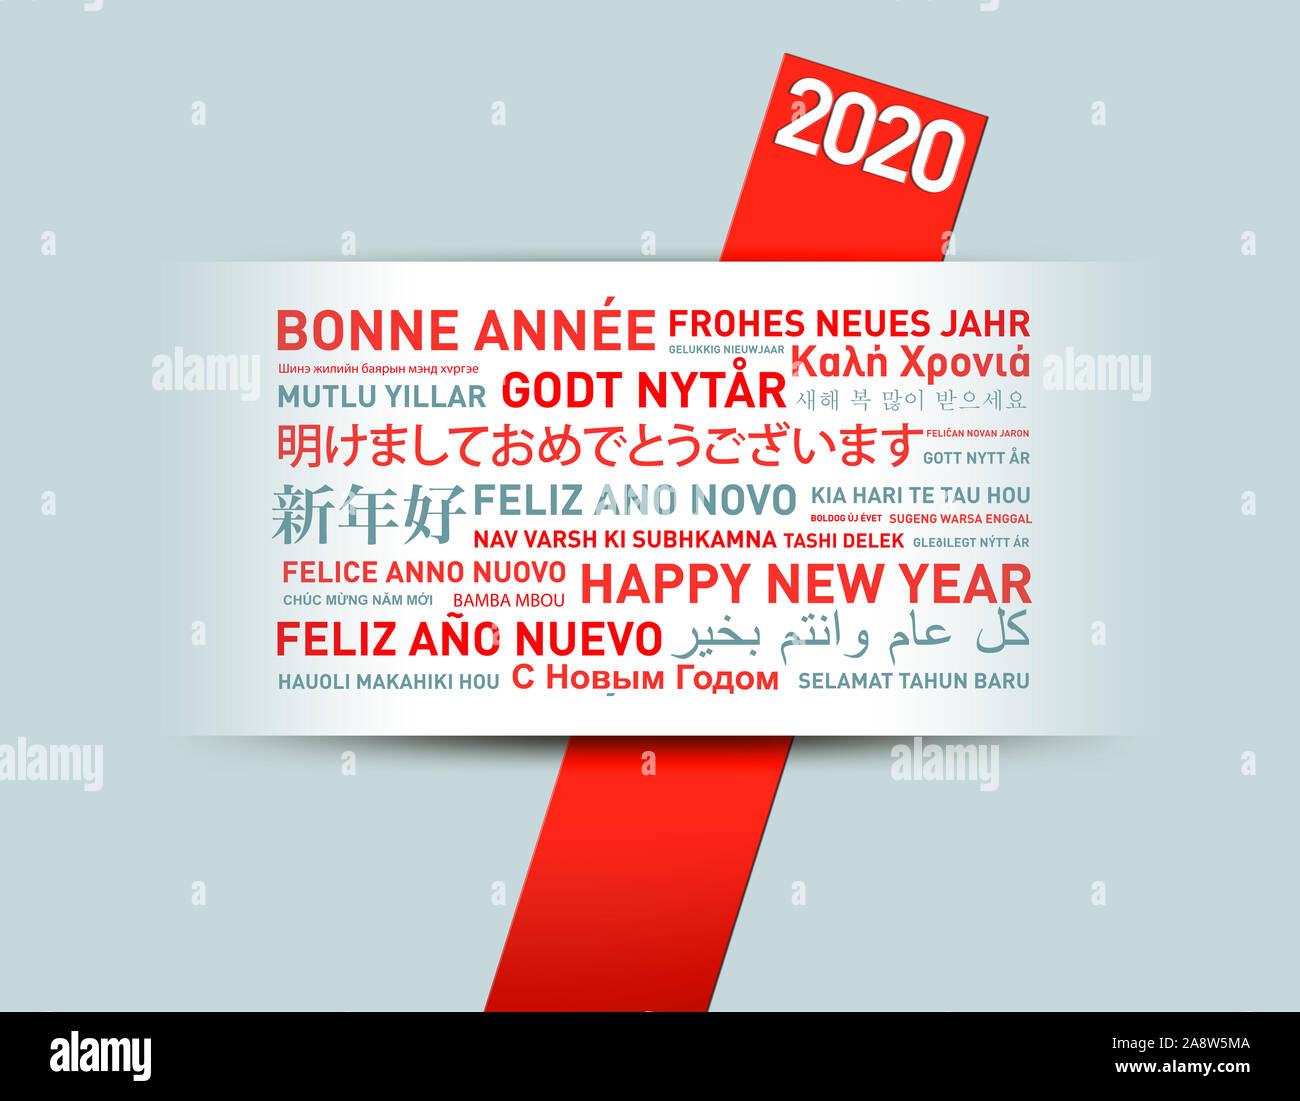 2020 Bonne année carte de voeux du monde entier dans différentes langues Banque D'Images